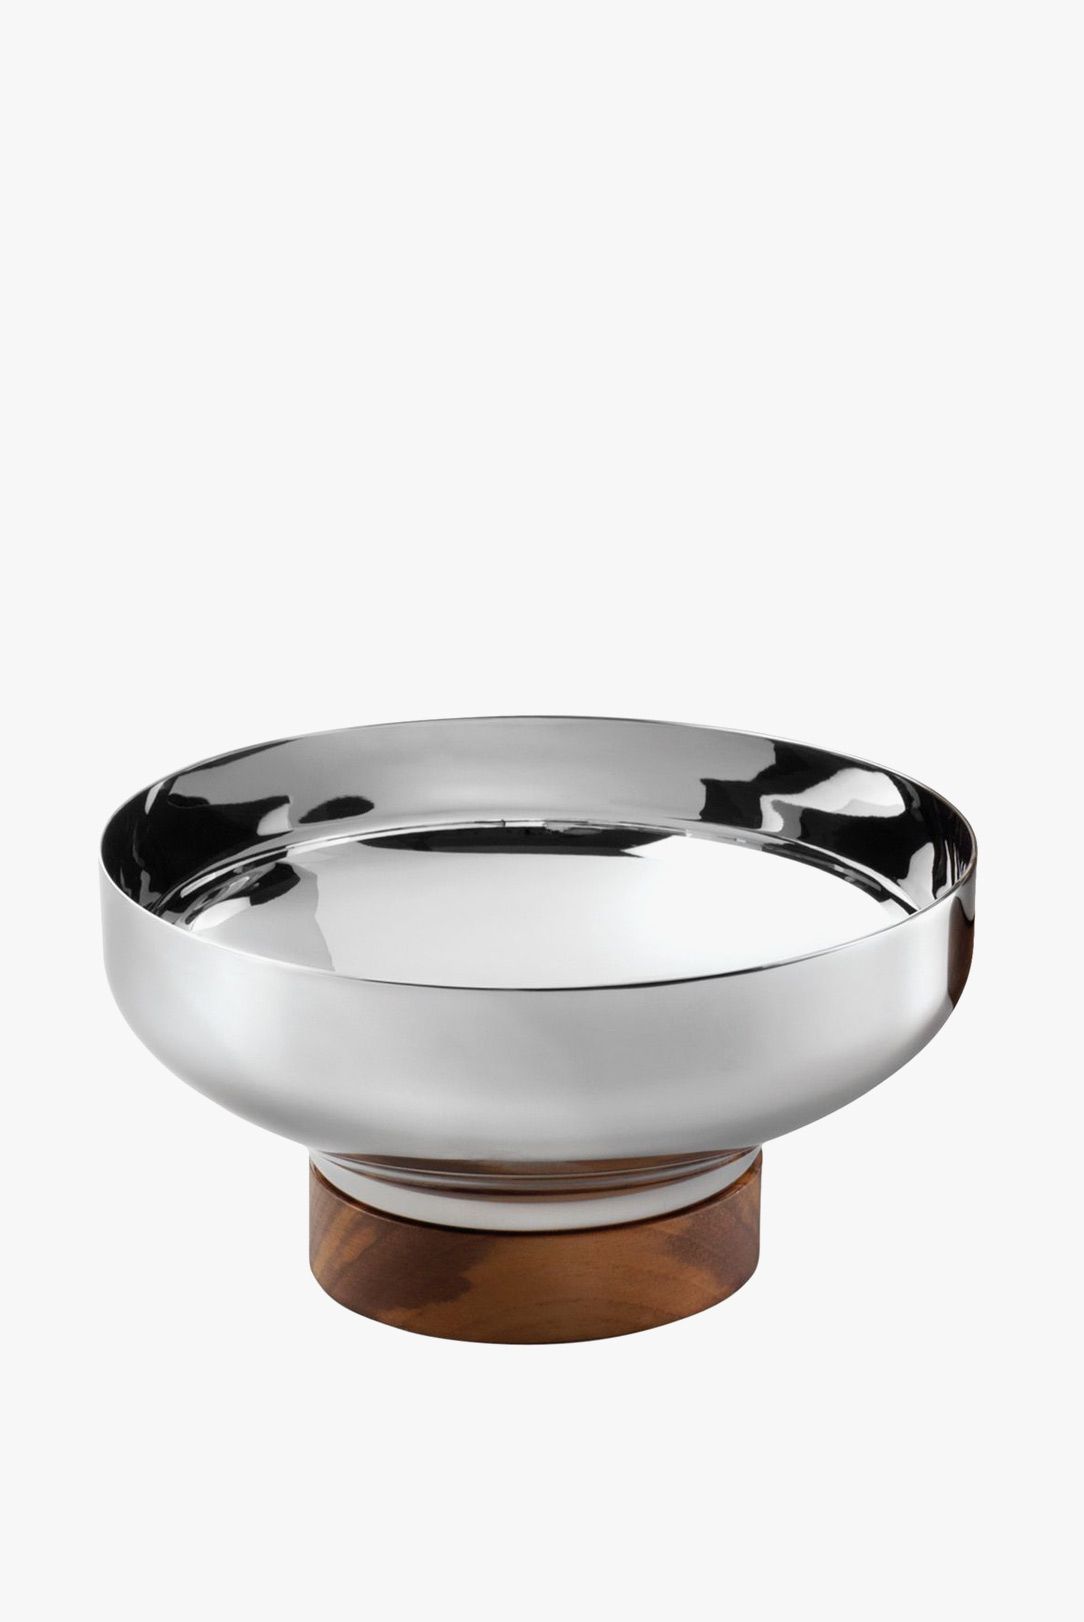 Robert Welch silver bowl